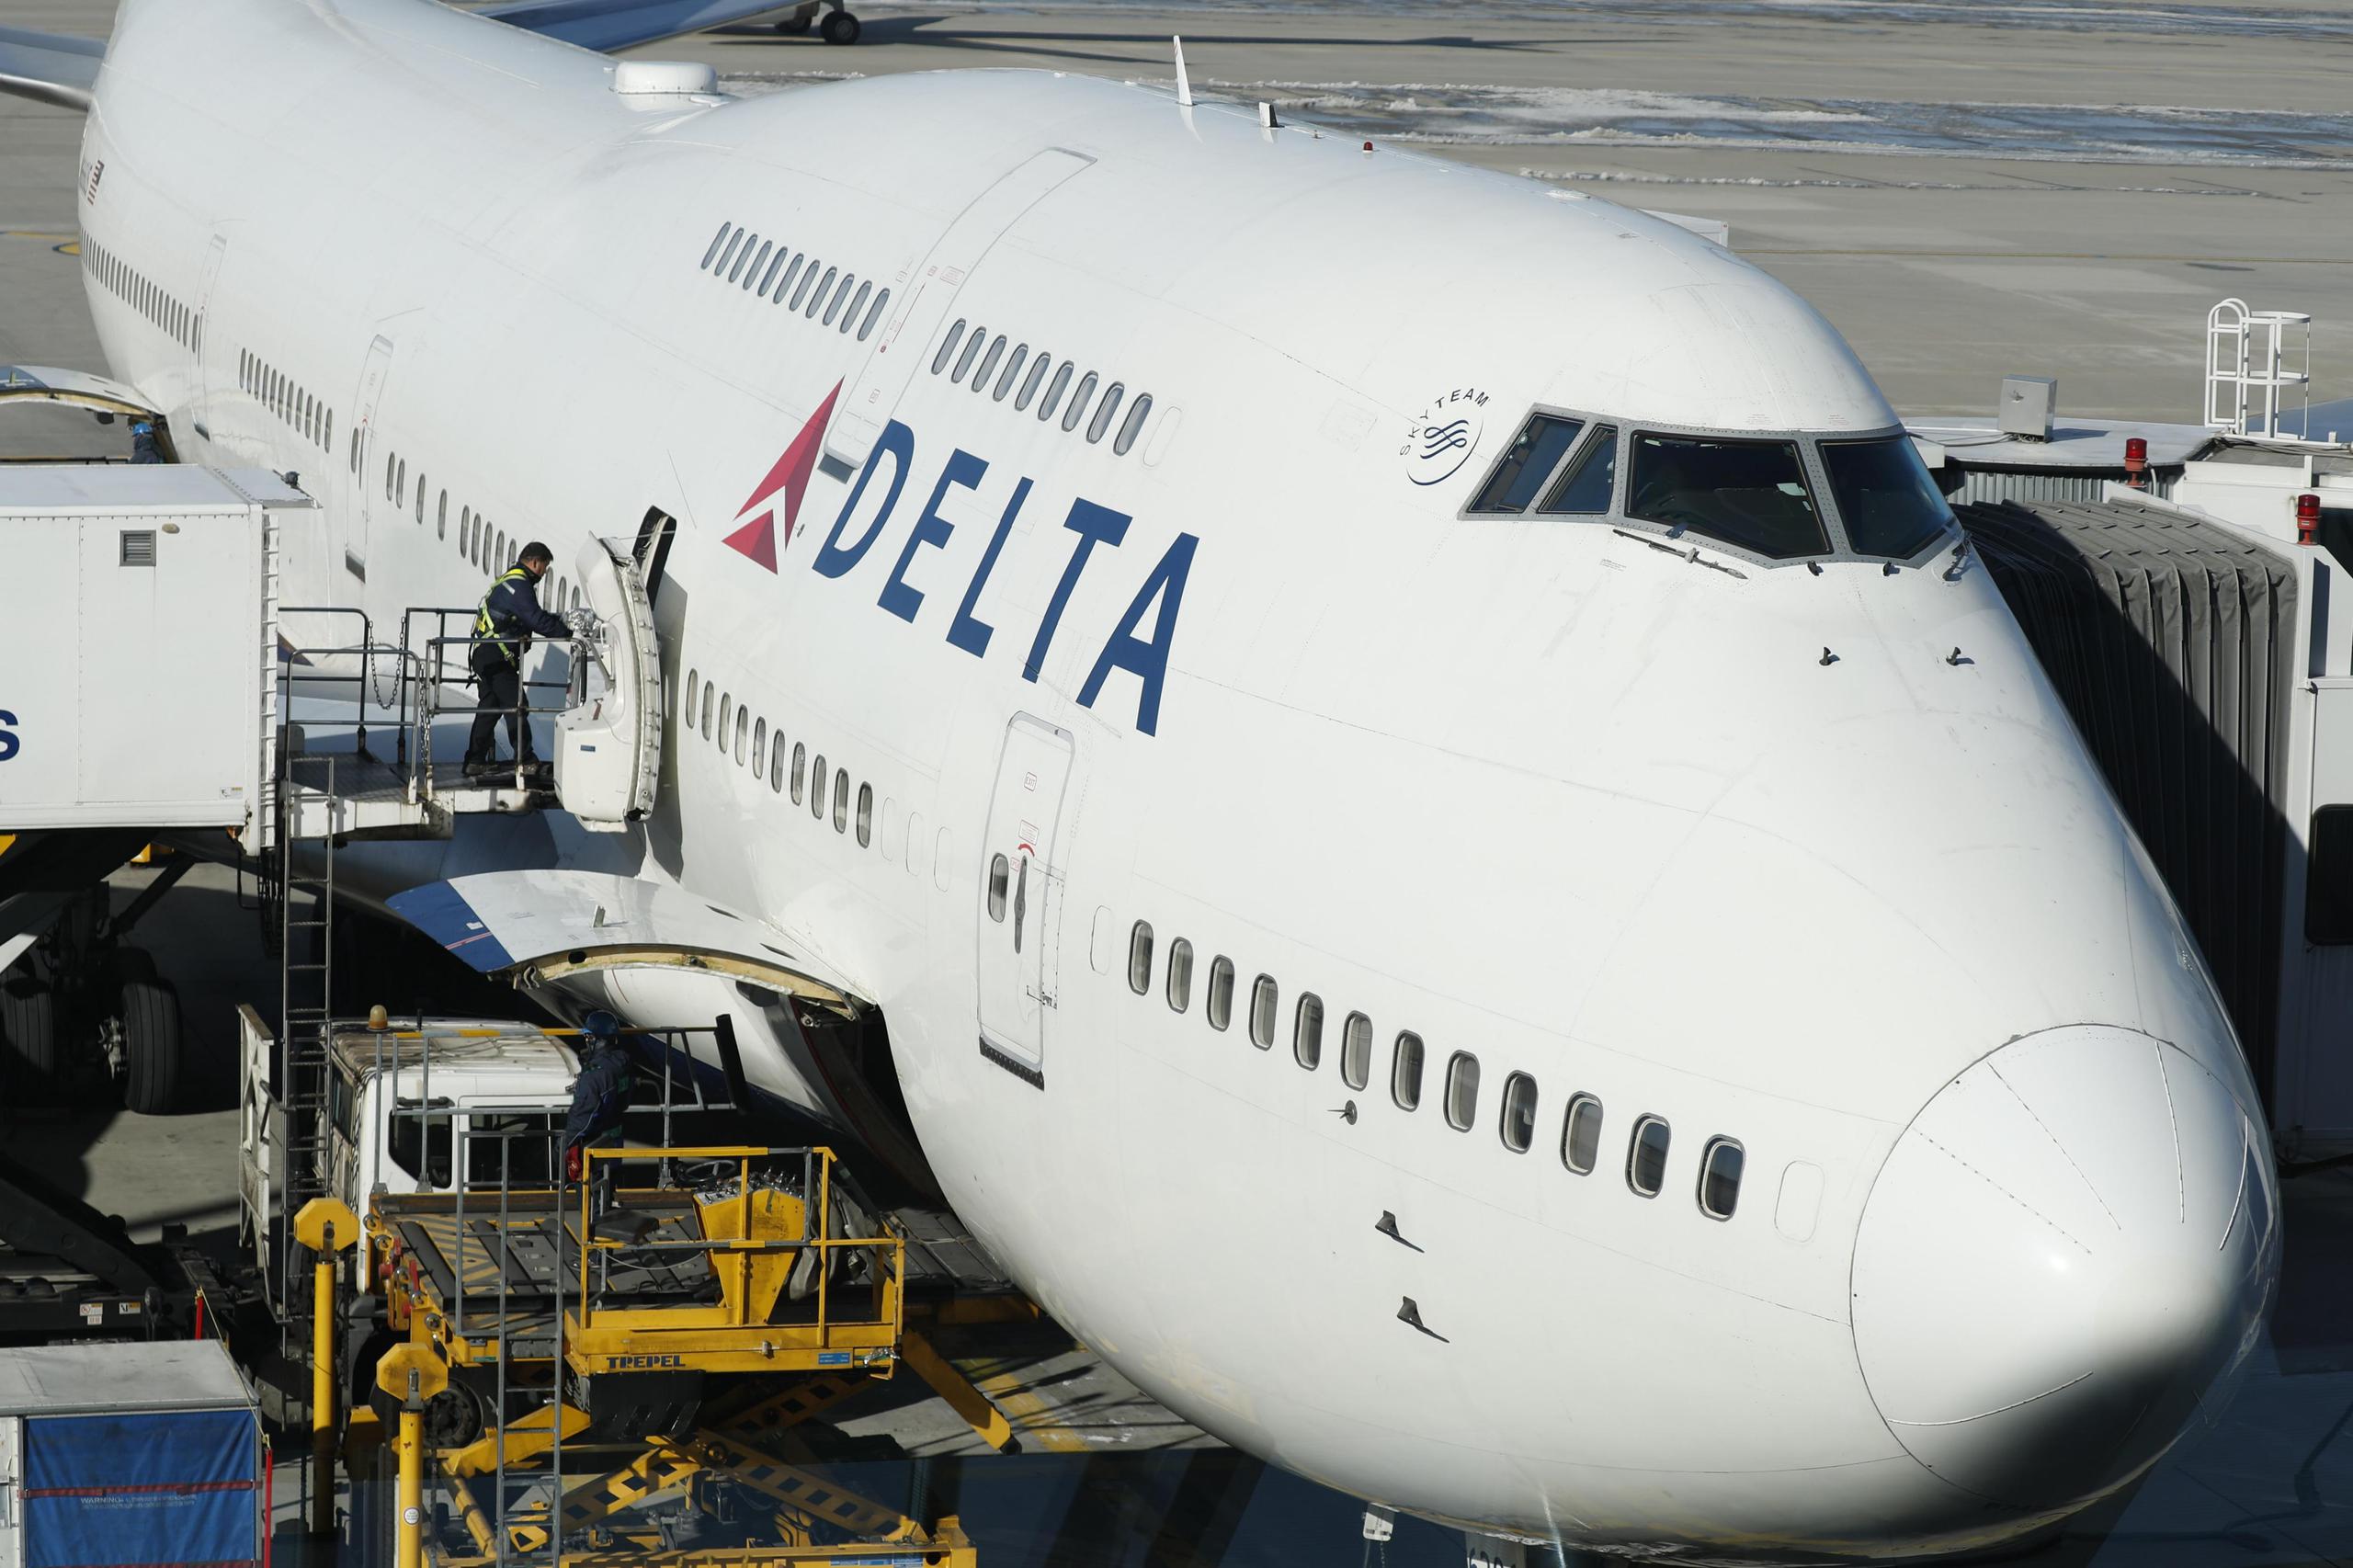 El director general de Delta, Ed Bastian, dijo en un memo dirigido a 90,000 empleados de la aerolínea, que confía en que puedan recibir apoyo de la Casa Blanca. (EFE/Archivo)